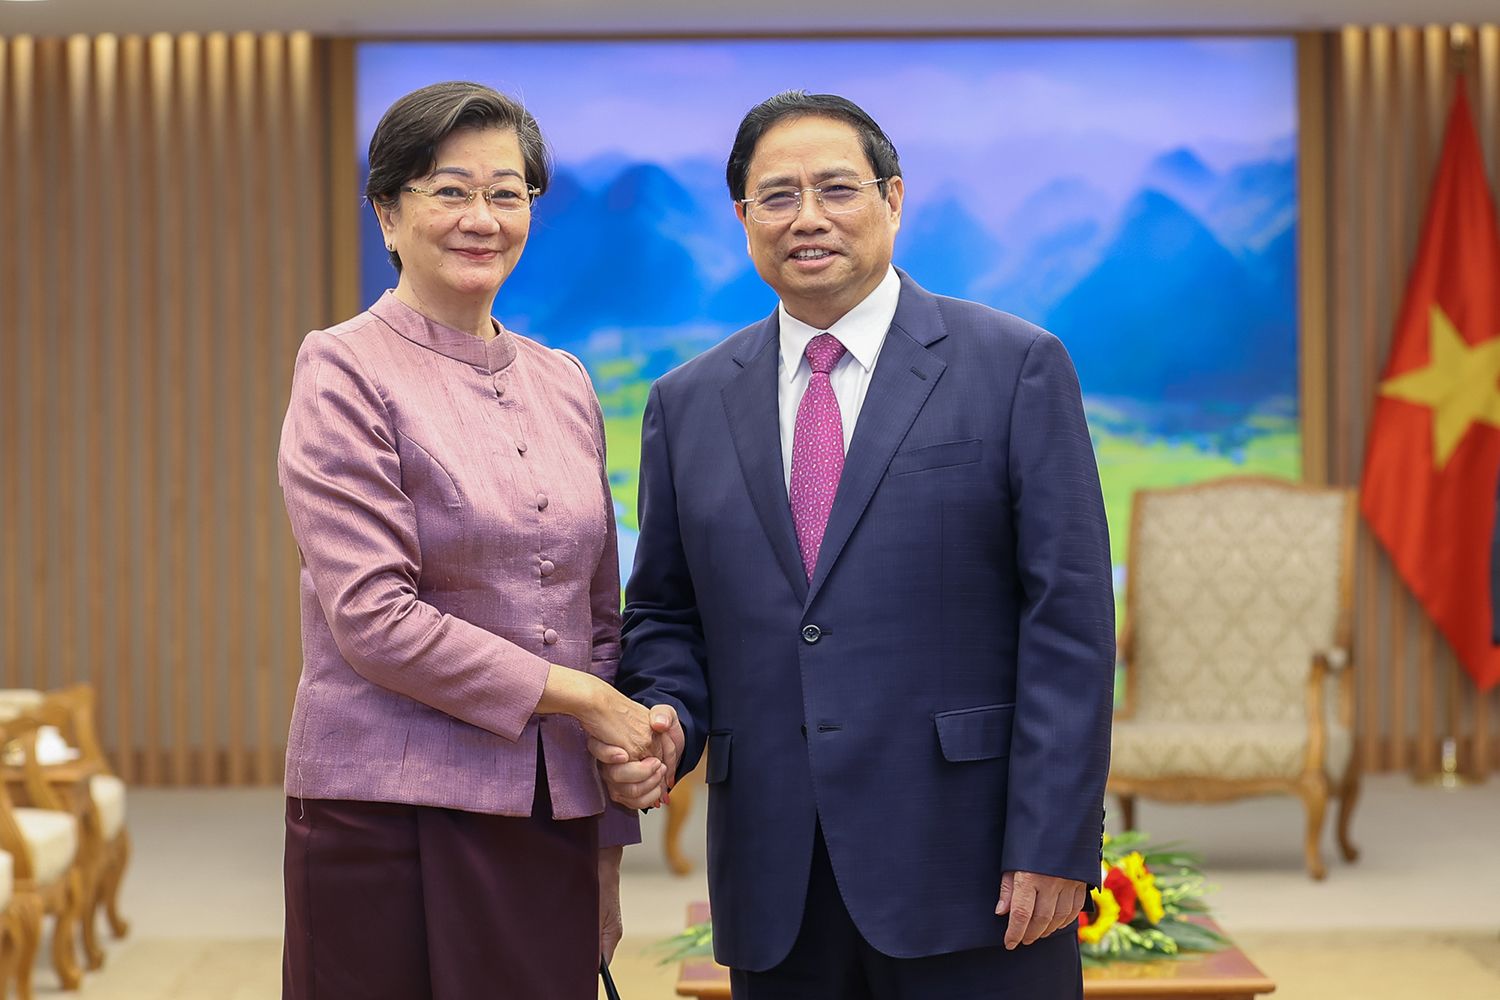 Chiều 7/4/2023, tại Trụ sở Chính phủ, Thủ tướng Chính phủ Phạm Minh Chính đã tiếp Đại sứ đặc mệnh toàn quyền Vương quốc Campuchia Chea Kimtha tới chào nhân dịp bắt đầu nhiệm kỳ tại Việt Nam. 